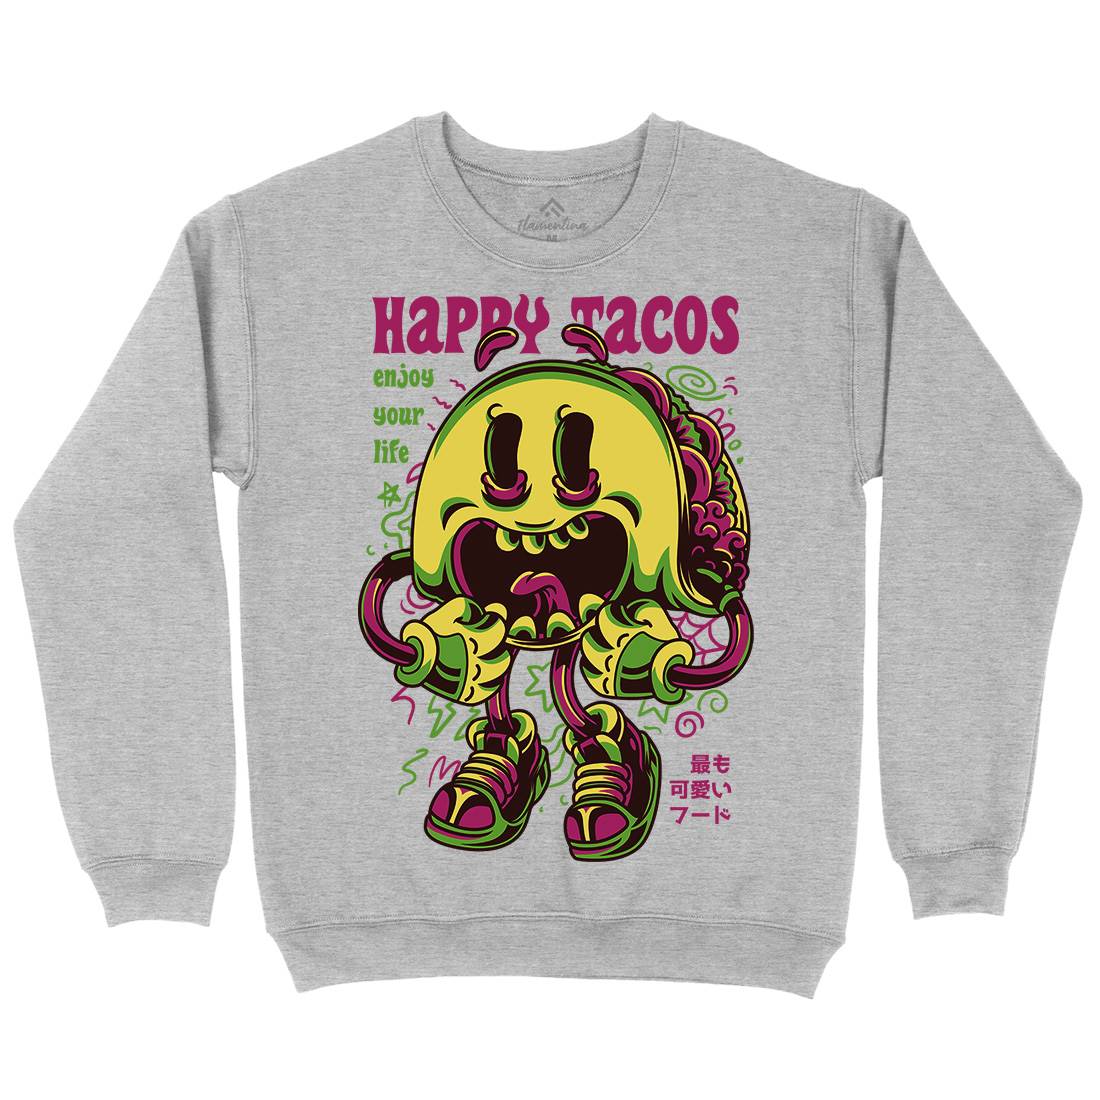 Happy Tacos Kids Crew Neck Sweatshirt Food D607